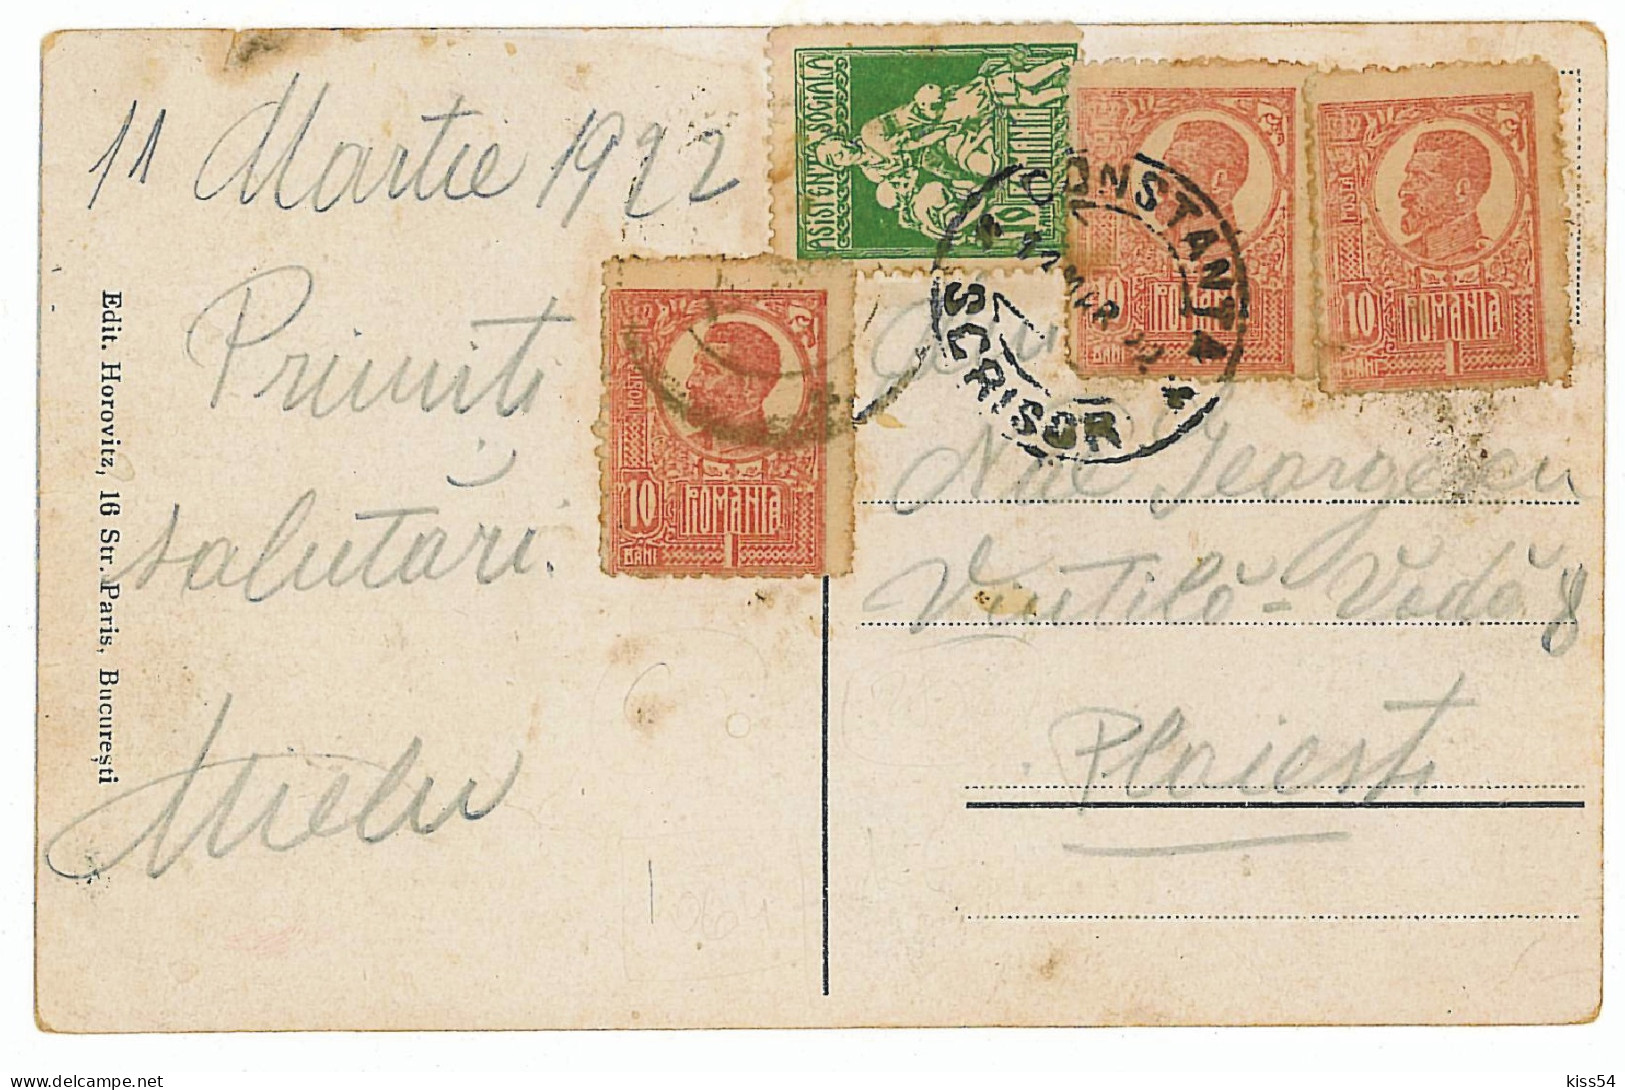 RO 81 - 2858  CONSTANTA, Statuia Lui Ovidiu, Market, Romania - Old Postcard - Used - 1922 - Romania